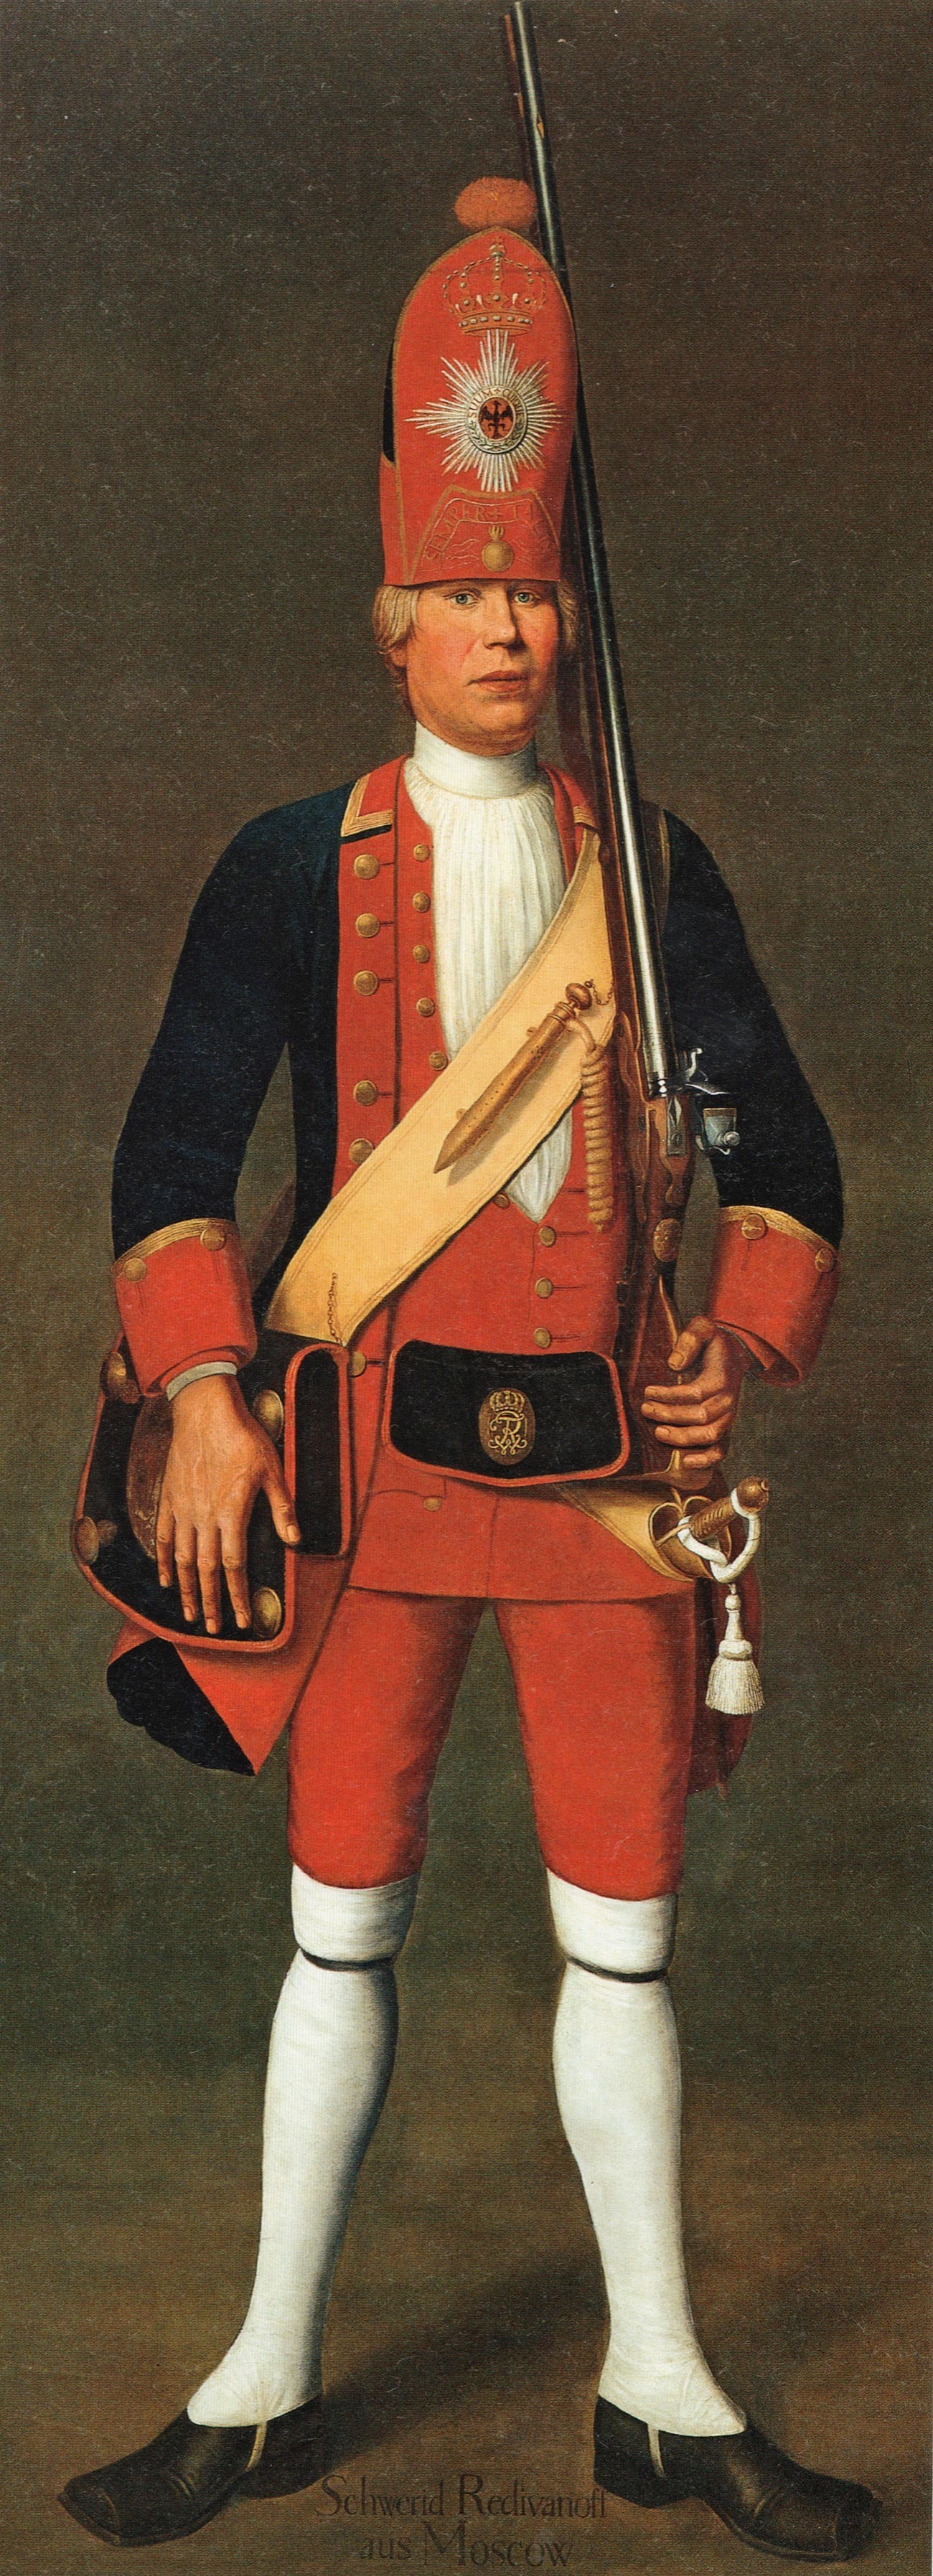 Портрет пешадинца Свирида Редиванова (Родионова) из Москве, кога је руски император поклонио пруском краљу у размену за Ћилибарну одају. 